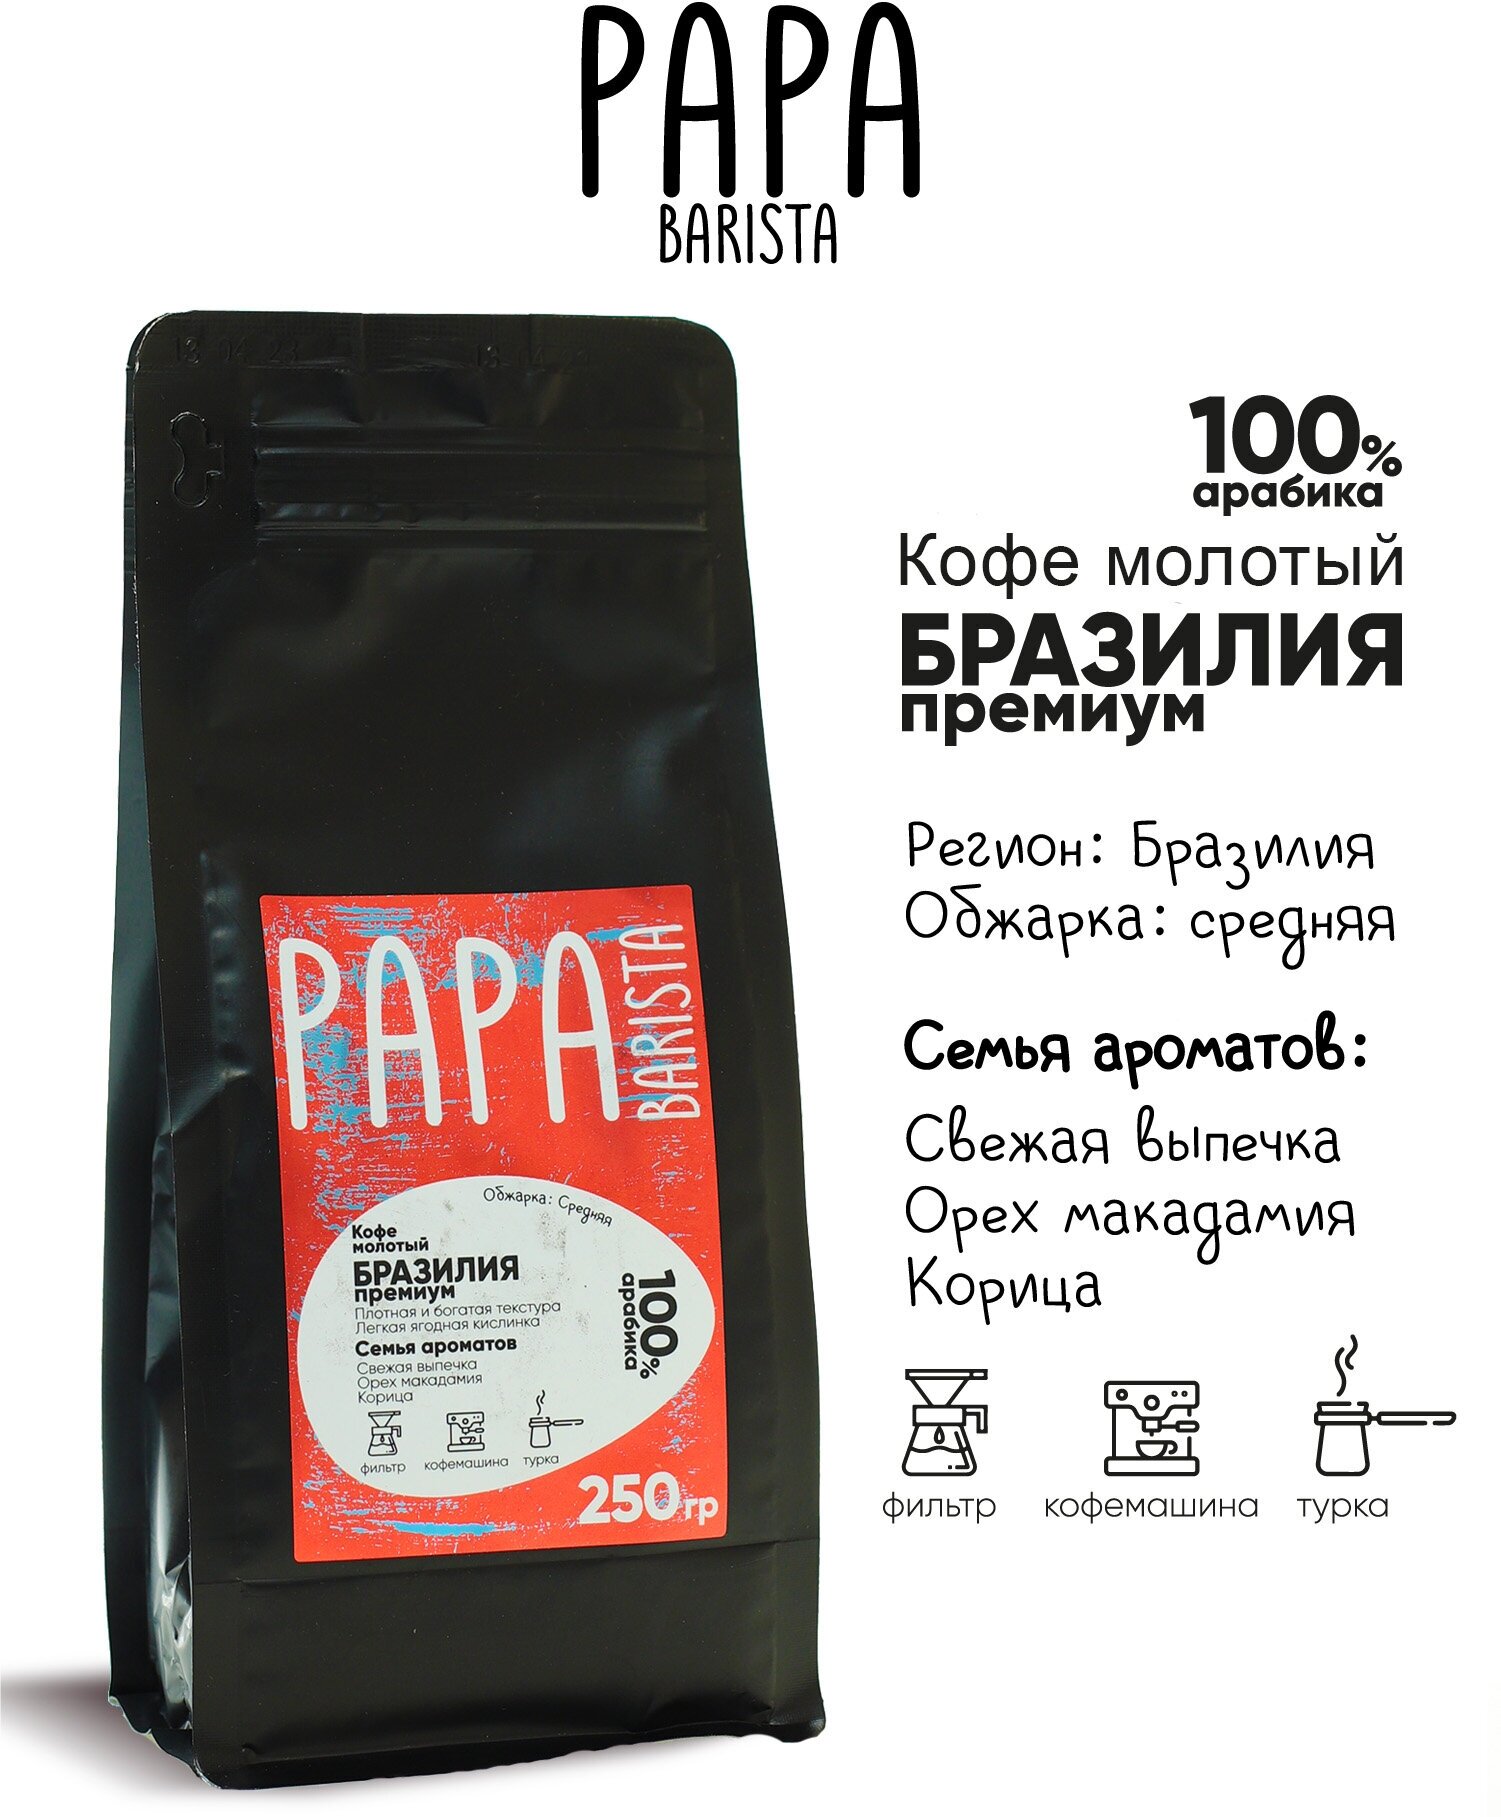 Кофе молотый Papa Barista Бразилия премиум 250 г.